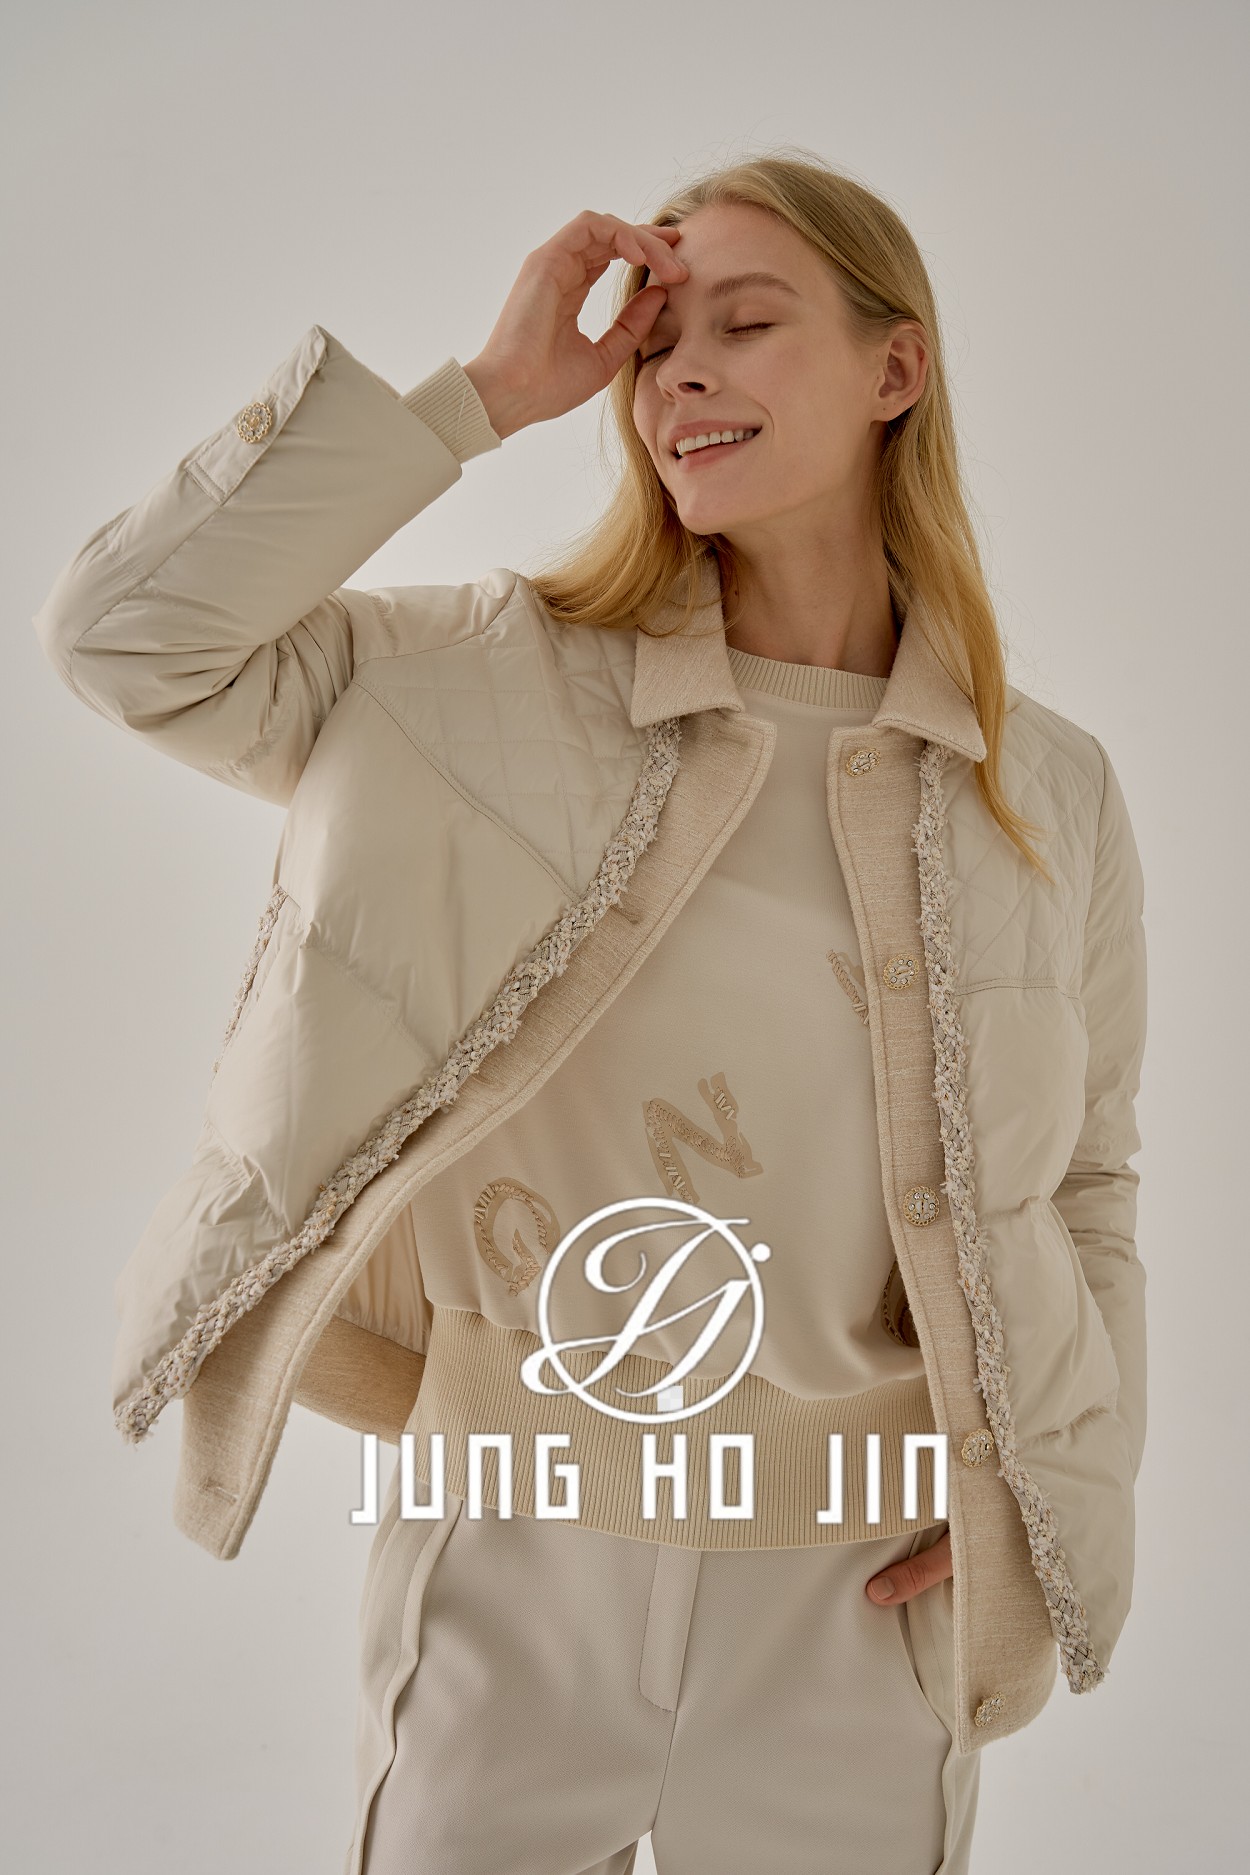 韩国高定服饰品牌JUNG HO JIN正式进入中国电商平台